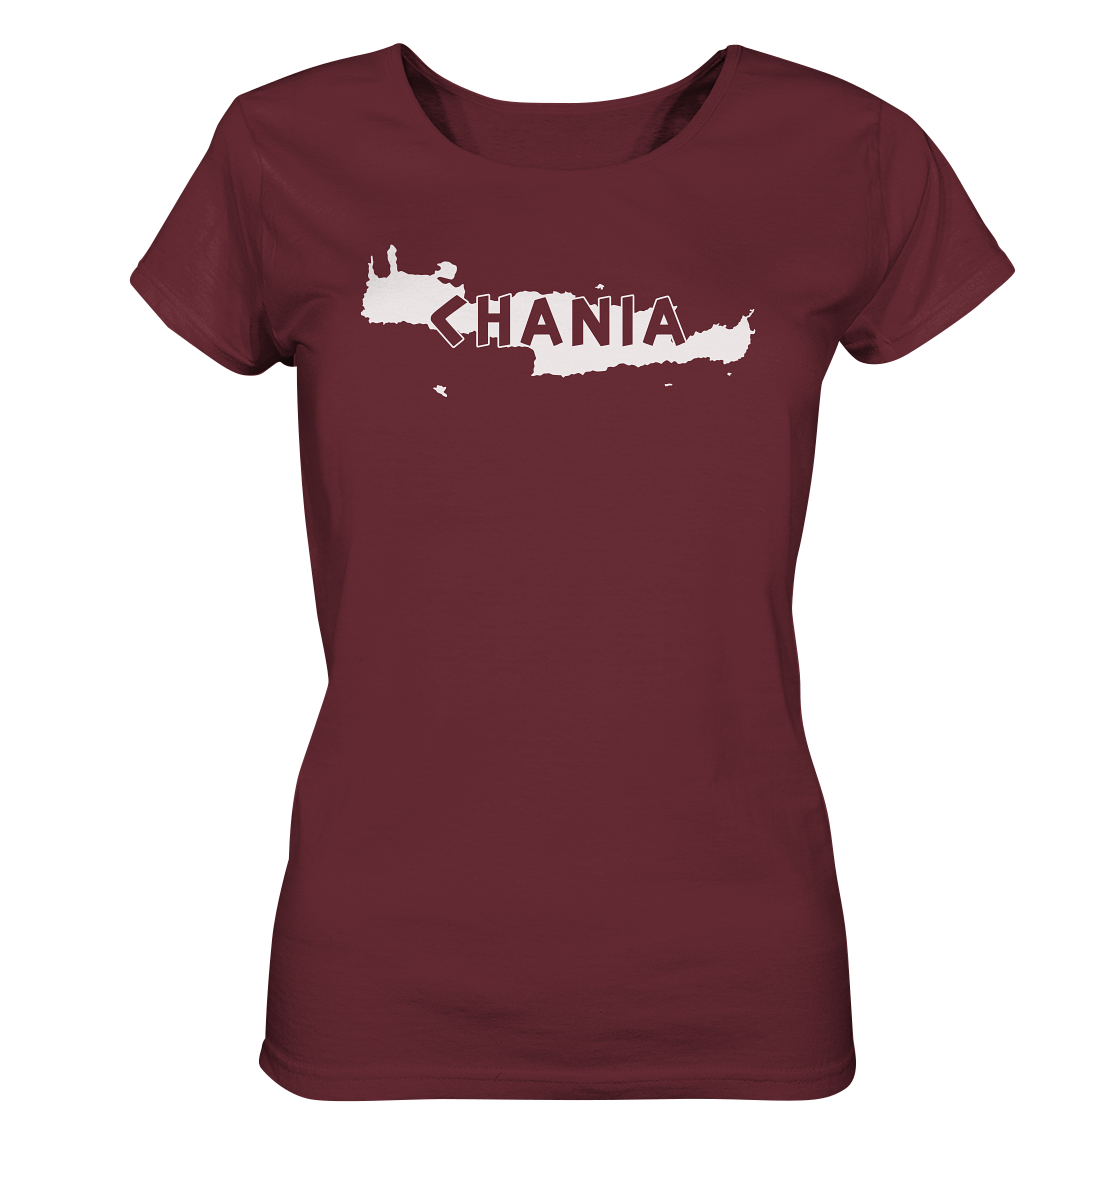 Chania Kreta Silhouette - Ladies Organic Shirt